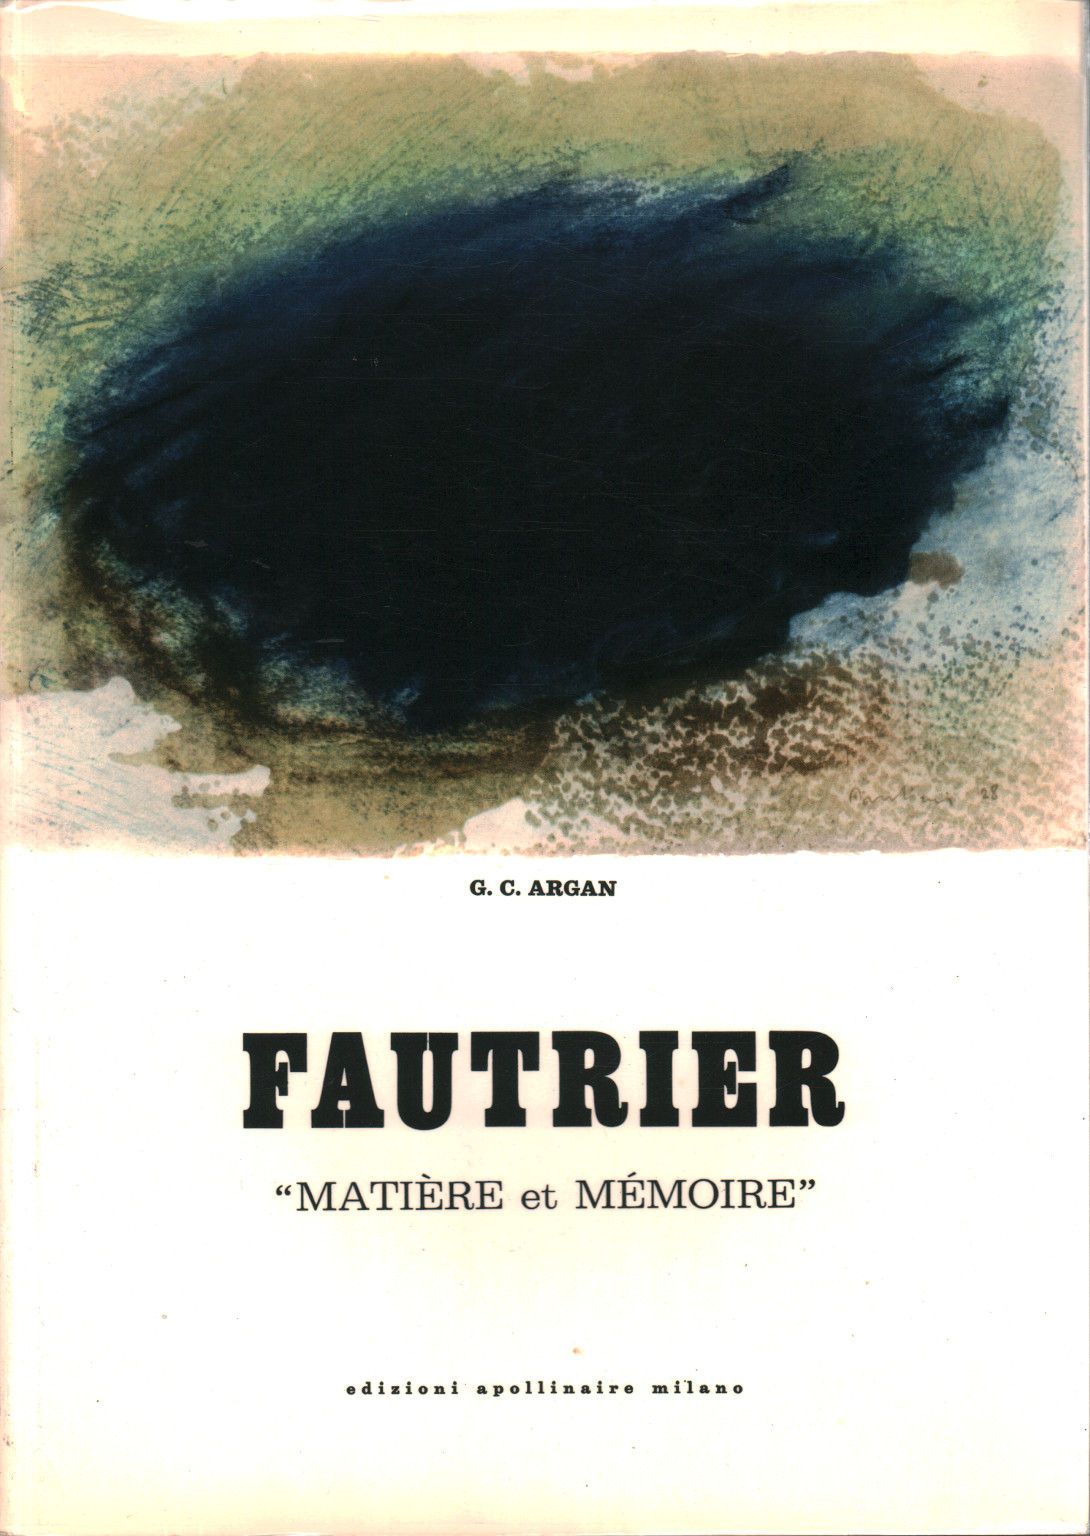 Fautrier, G. C. Argan